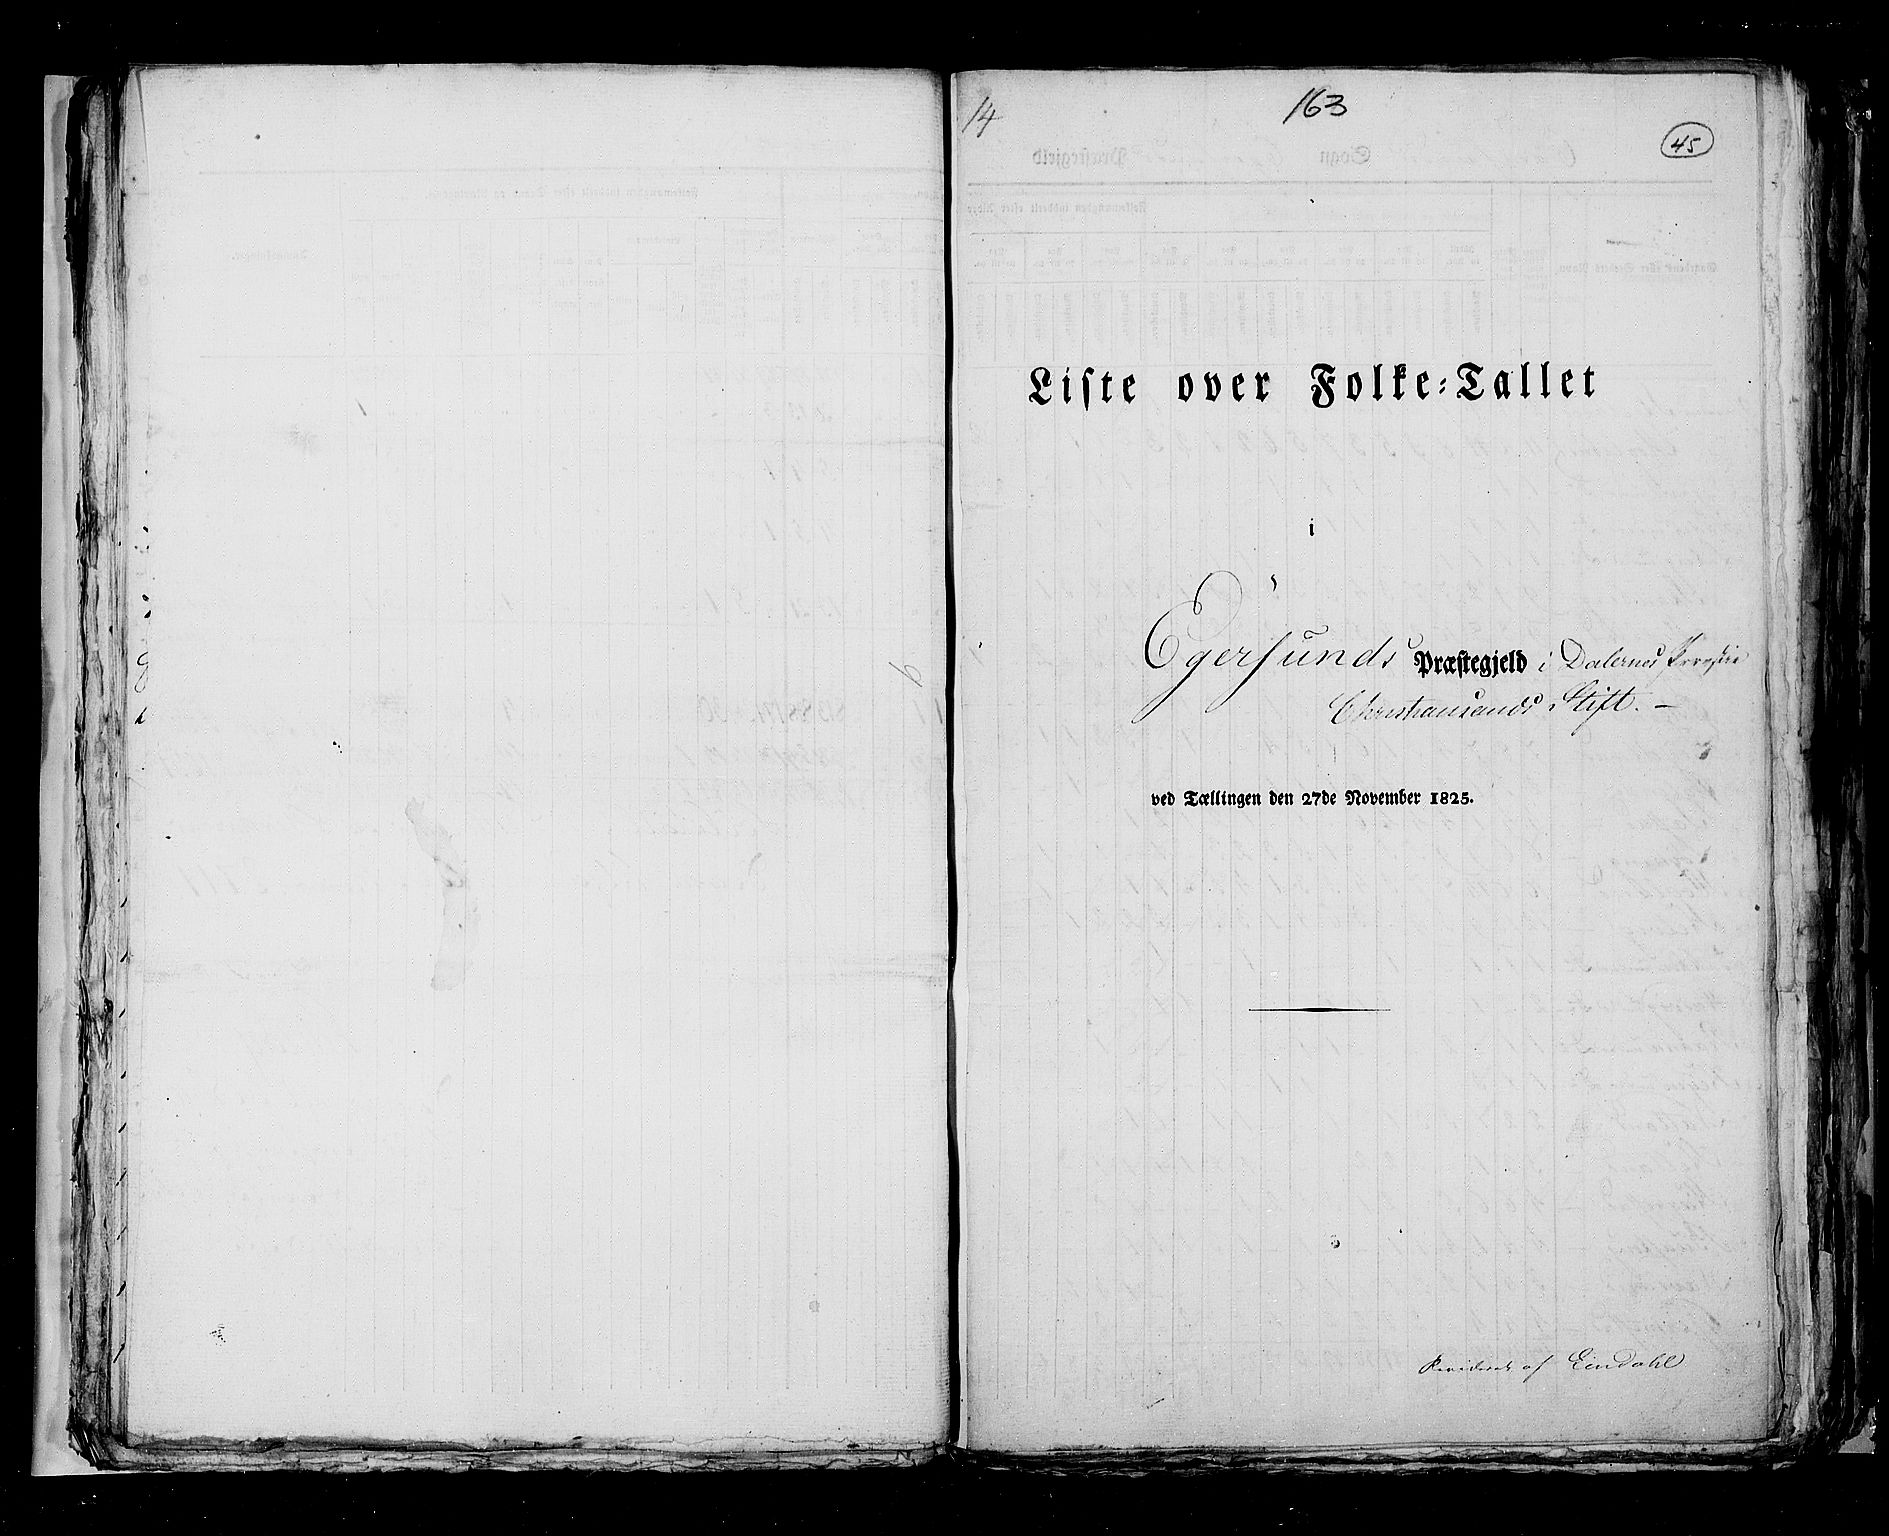 RA, Folketellingen 1825, bind 12: Stavanger amt, 1825, s. 45